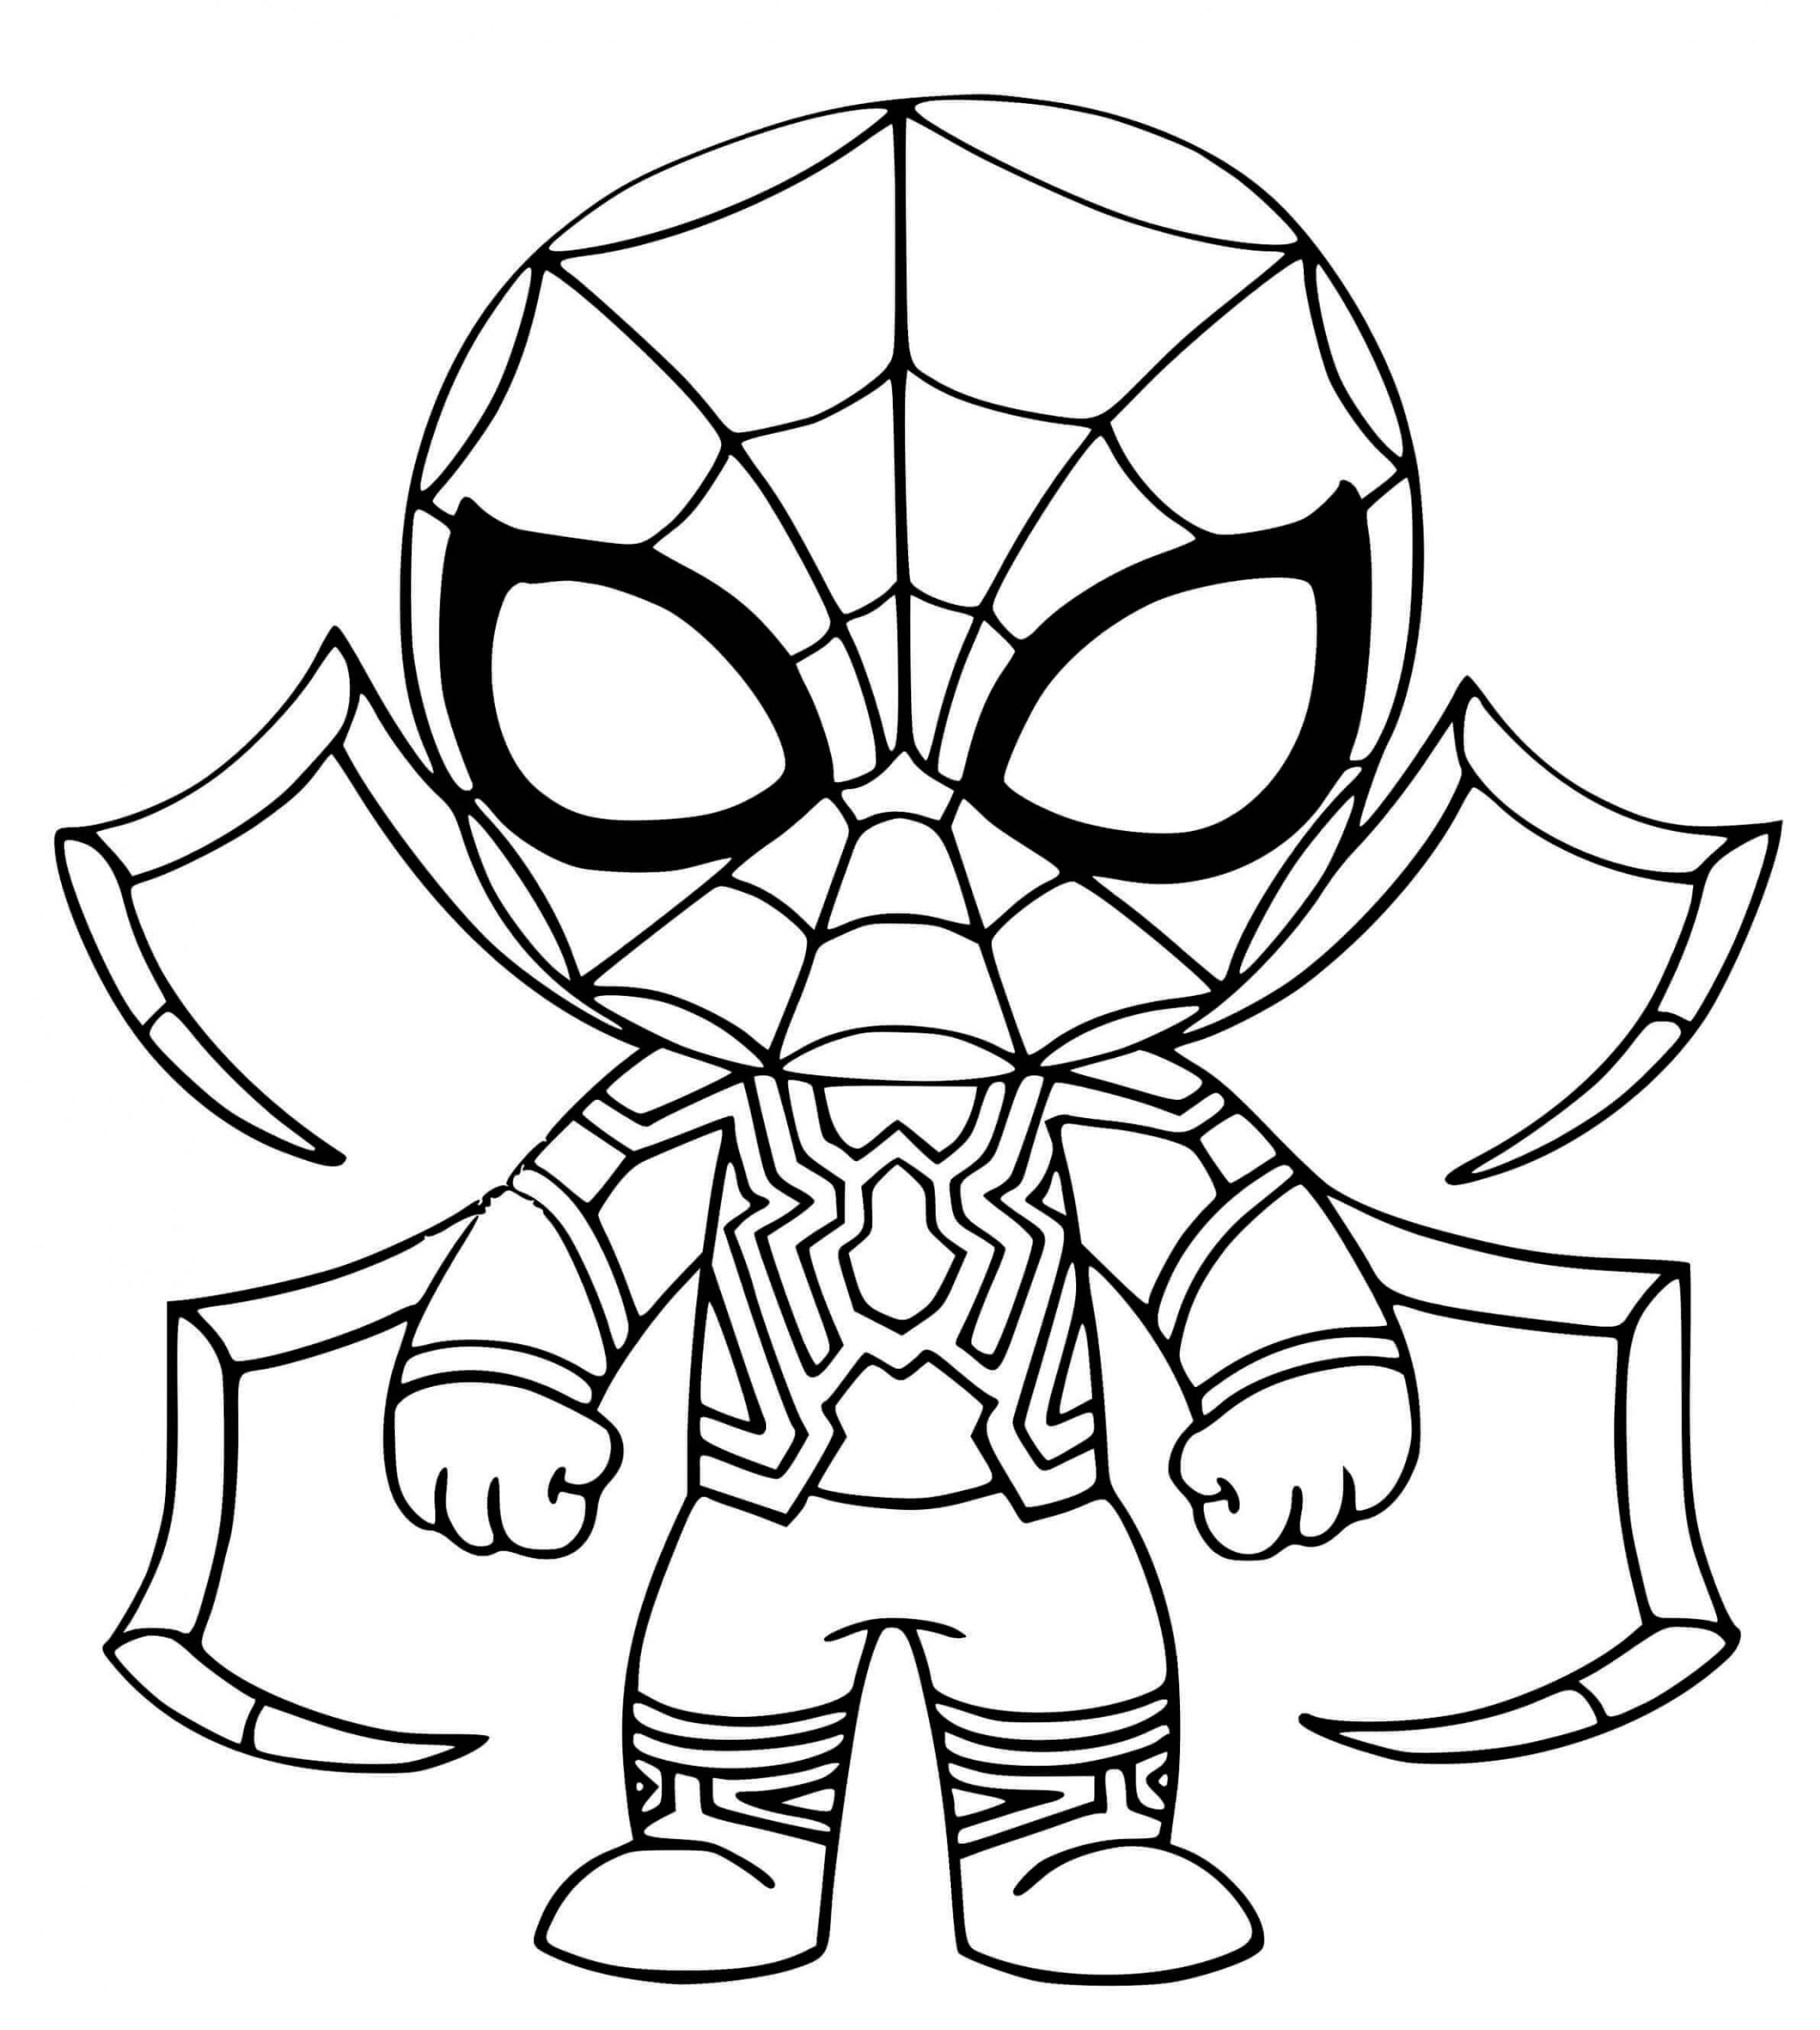 Chibi Spiderman de Fer coloring page